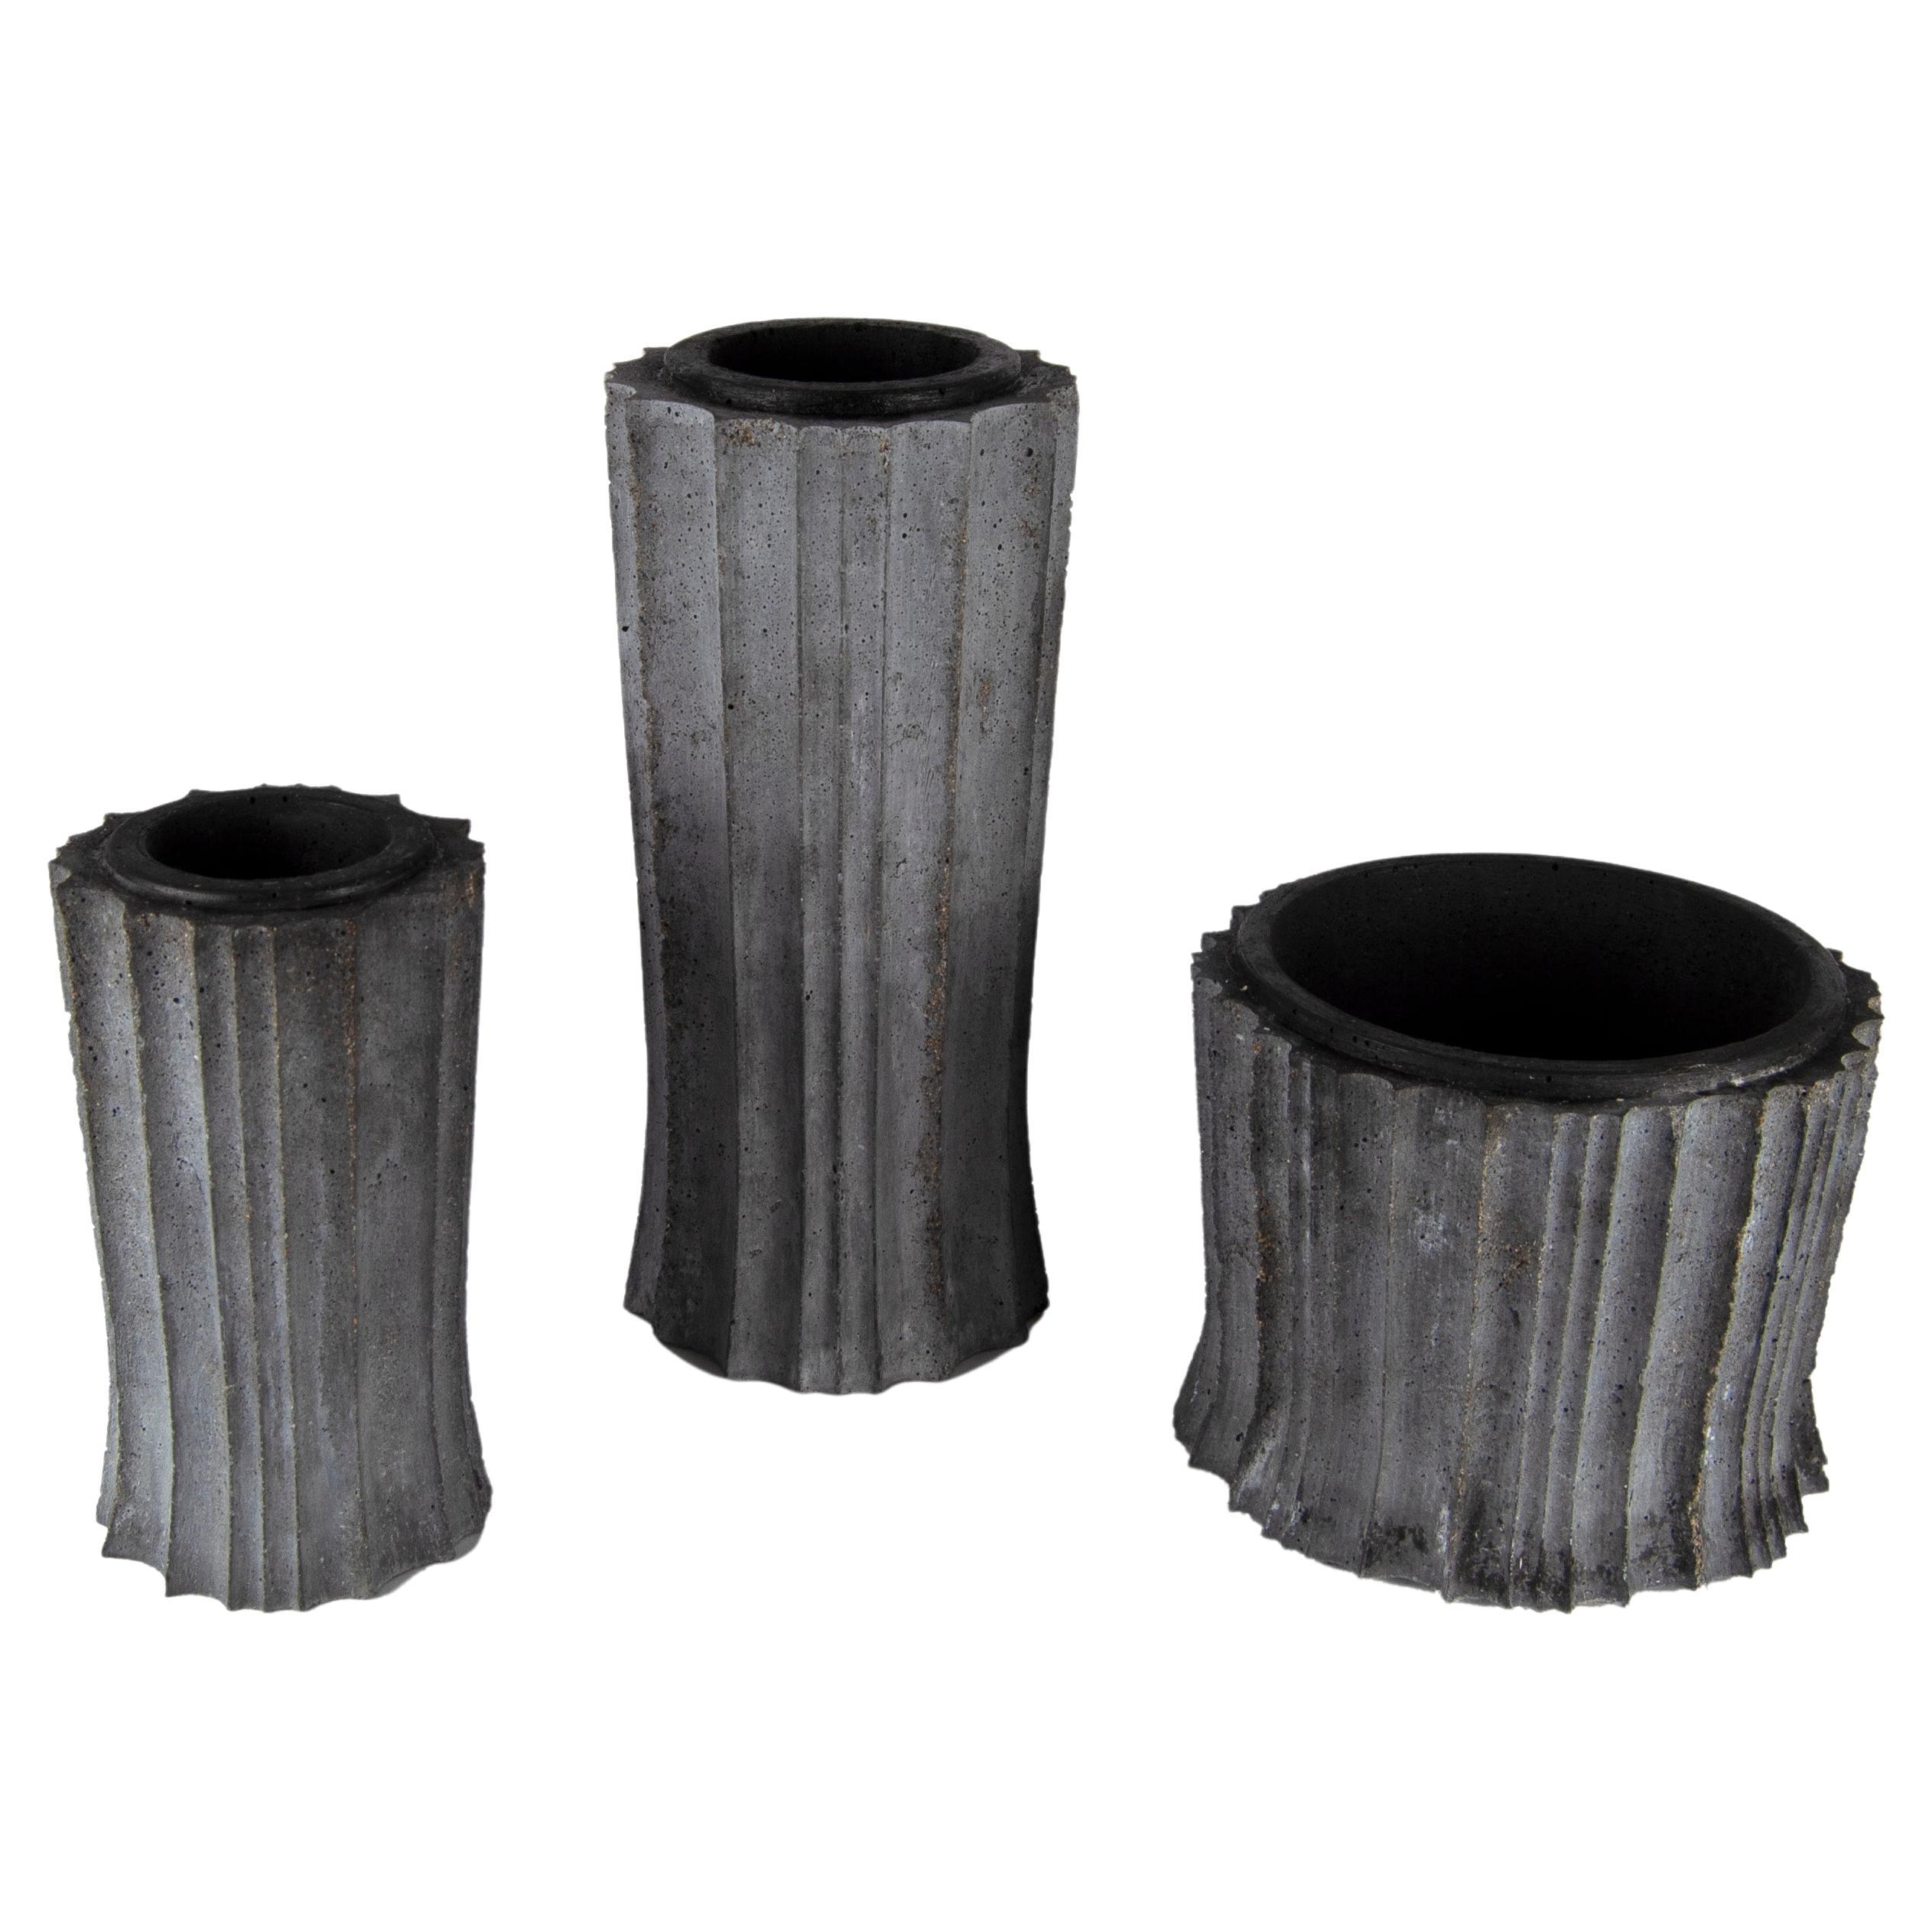 Fluted Concrete Vases / Vessels, 'Set of 3'